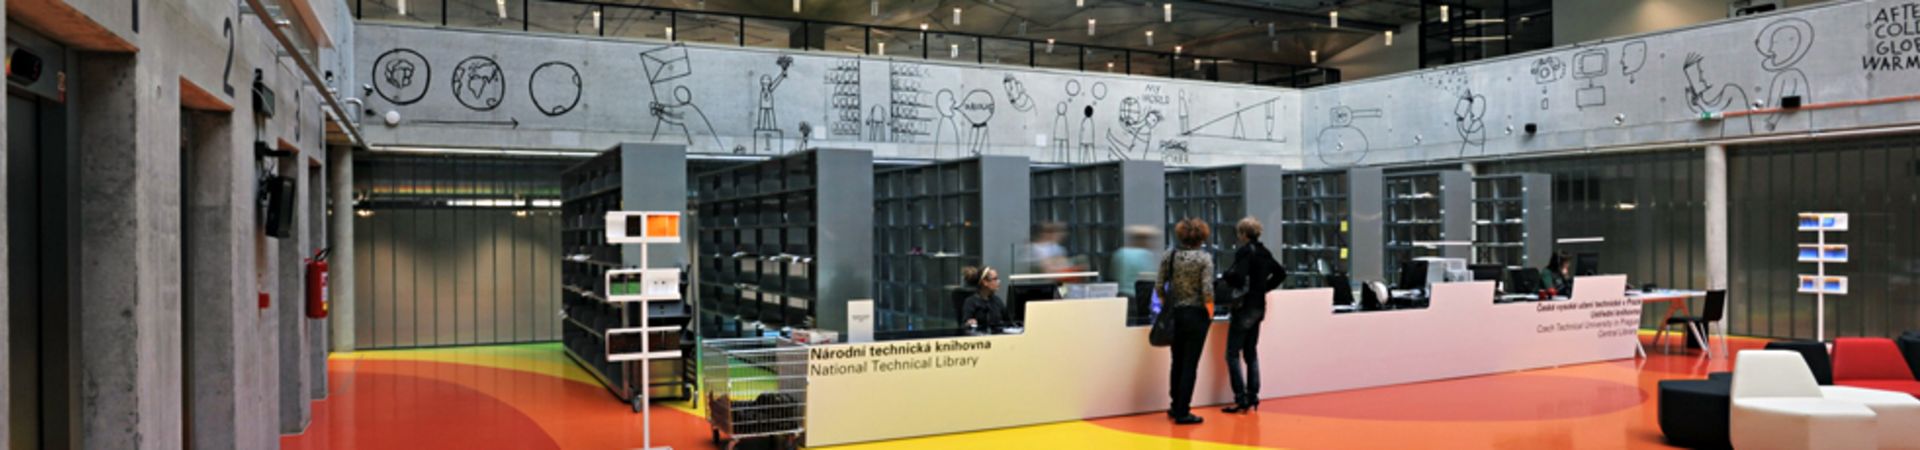 Národní technická knihovna